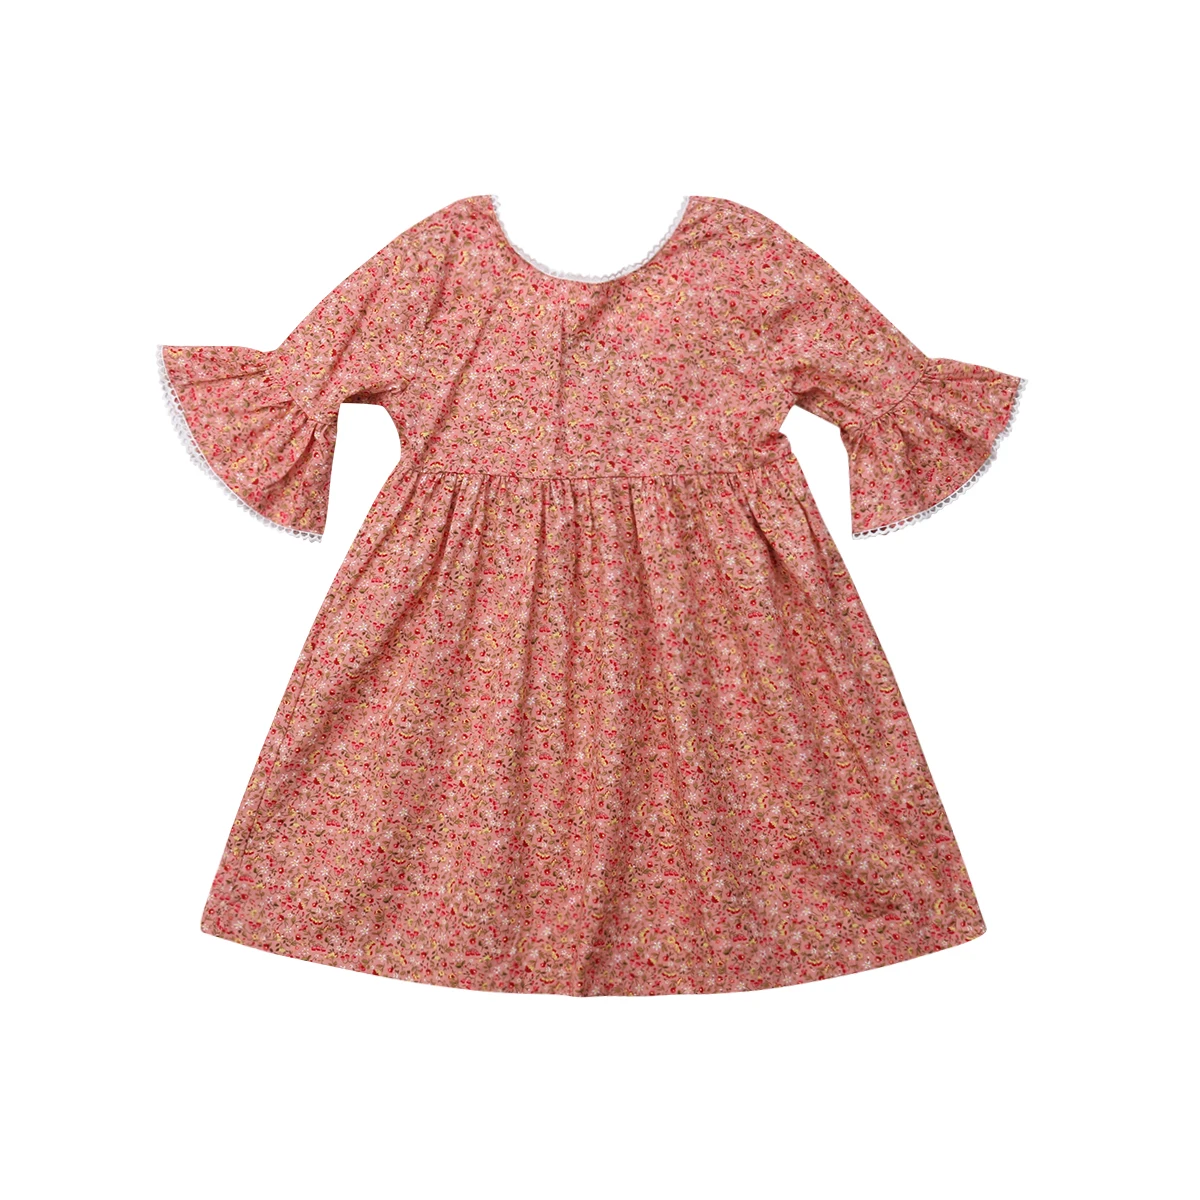 Фото Детское платье пачка с длинным рукавом на осень|Платья для девочек| |